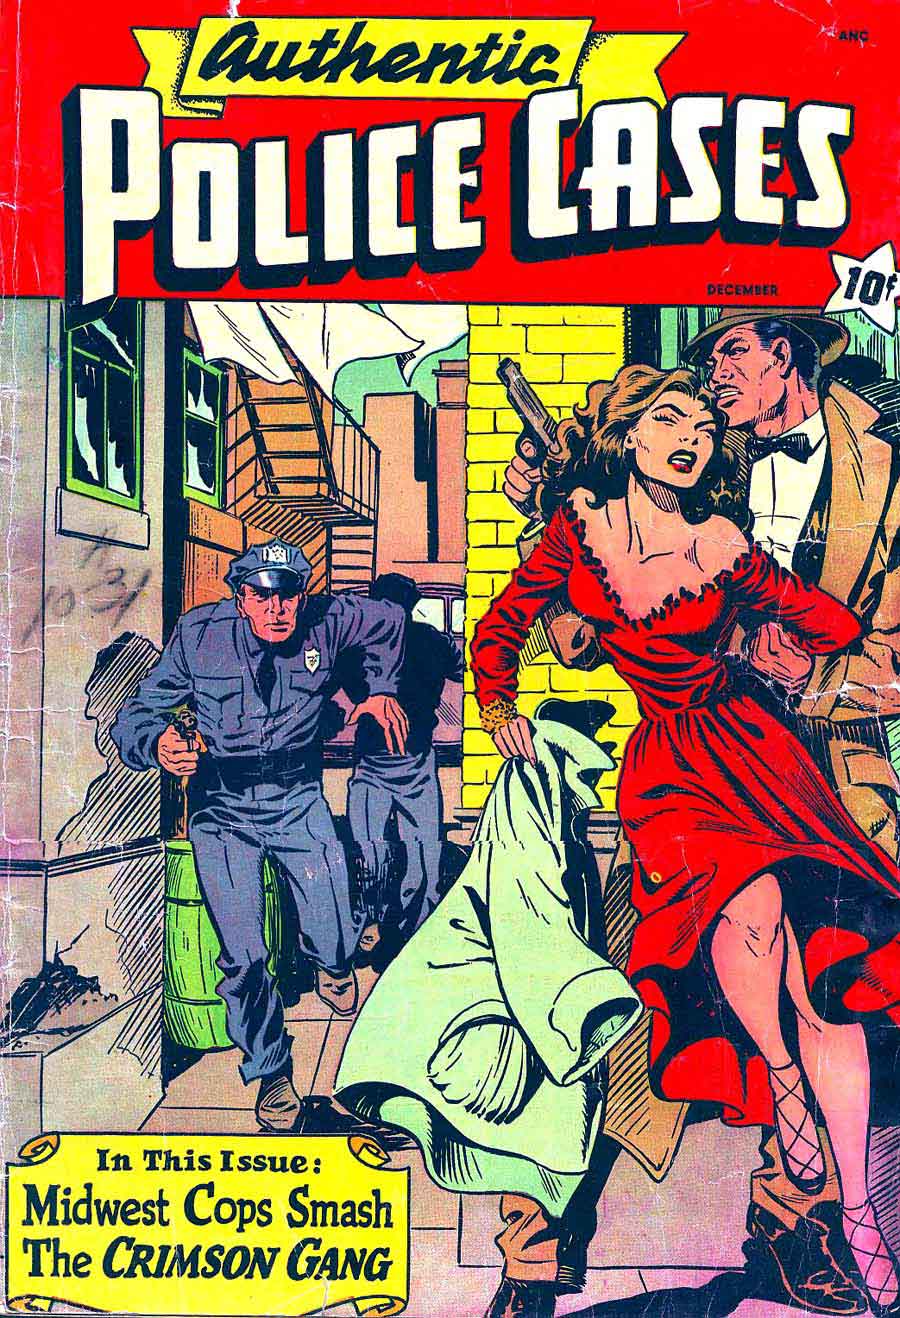 Authentic Police Cases v1 #10 st john crime comic book cover art by Matt Baker